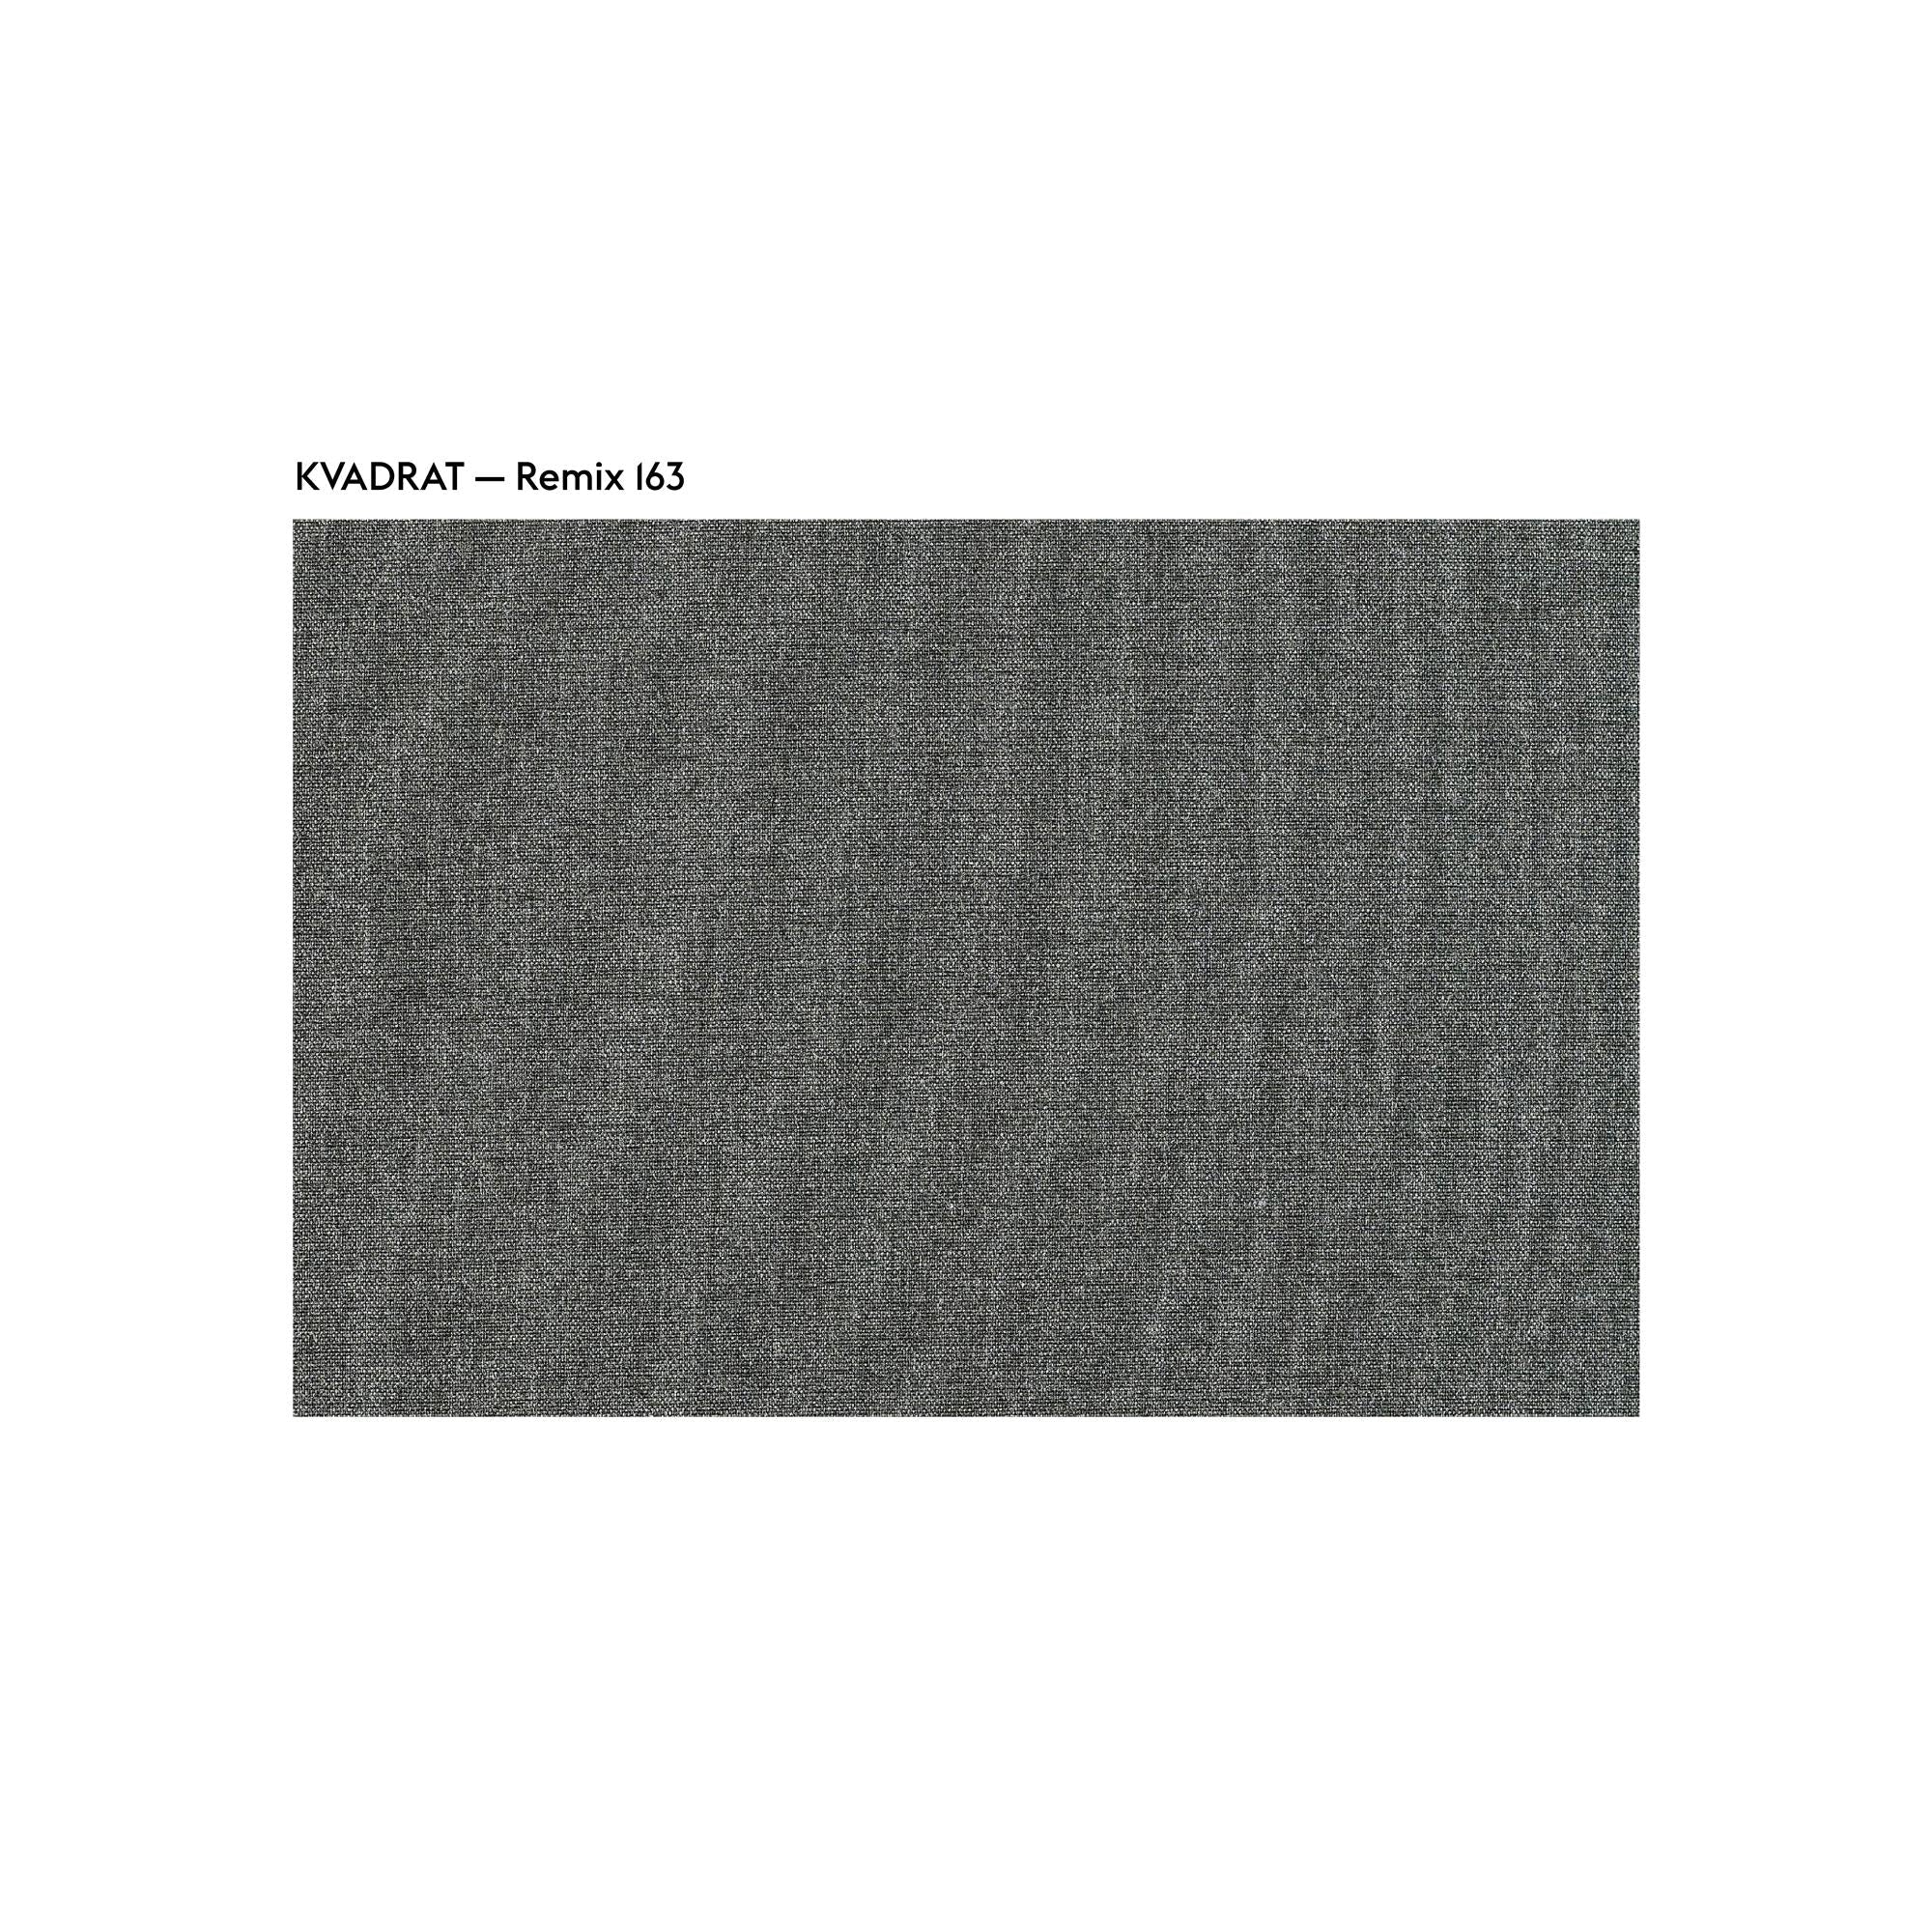 Muuto Rest Pouf Fabric, Remix 163